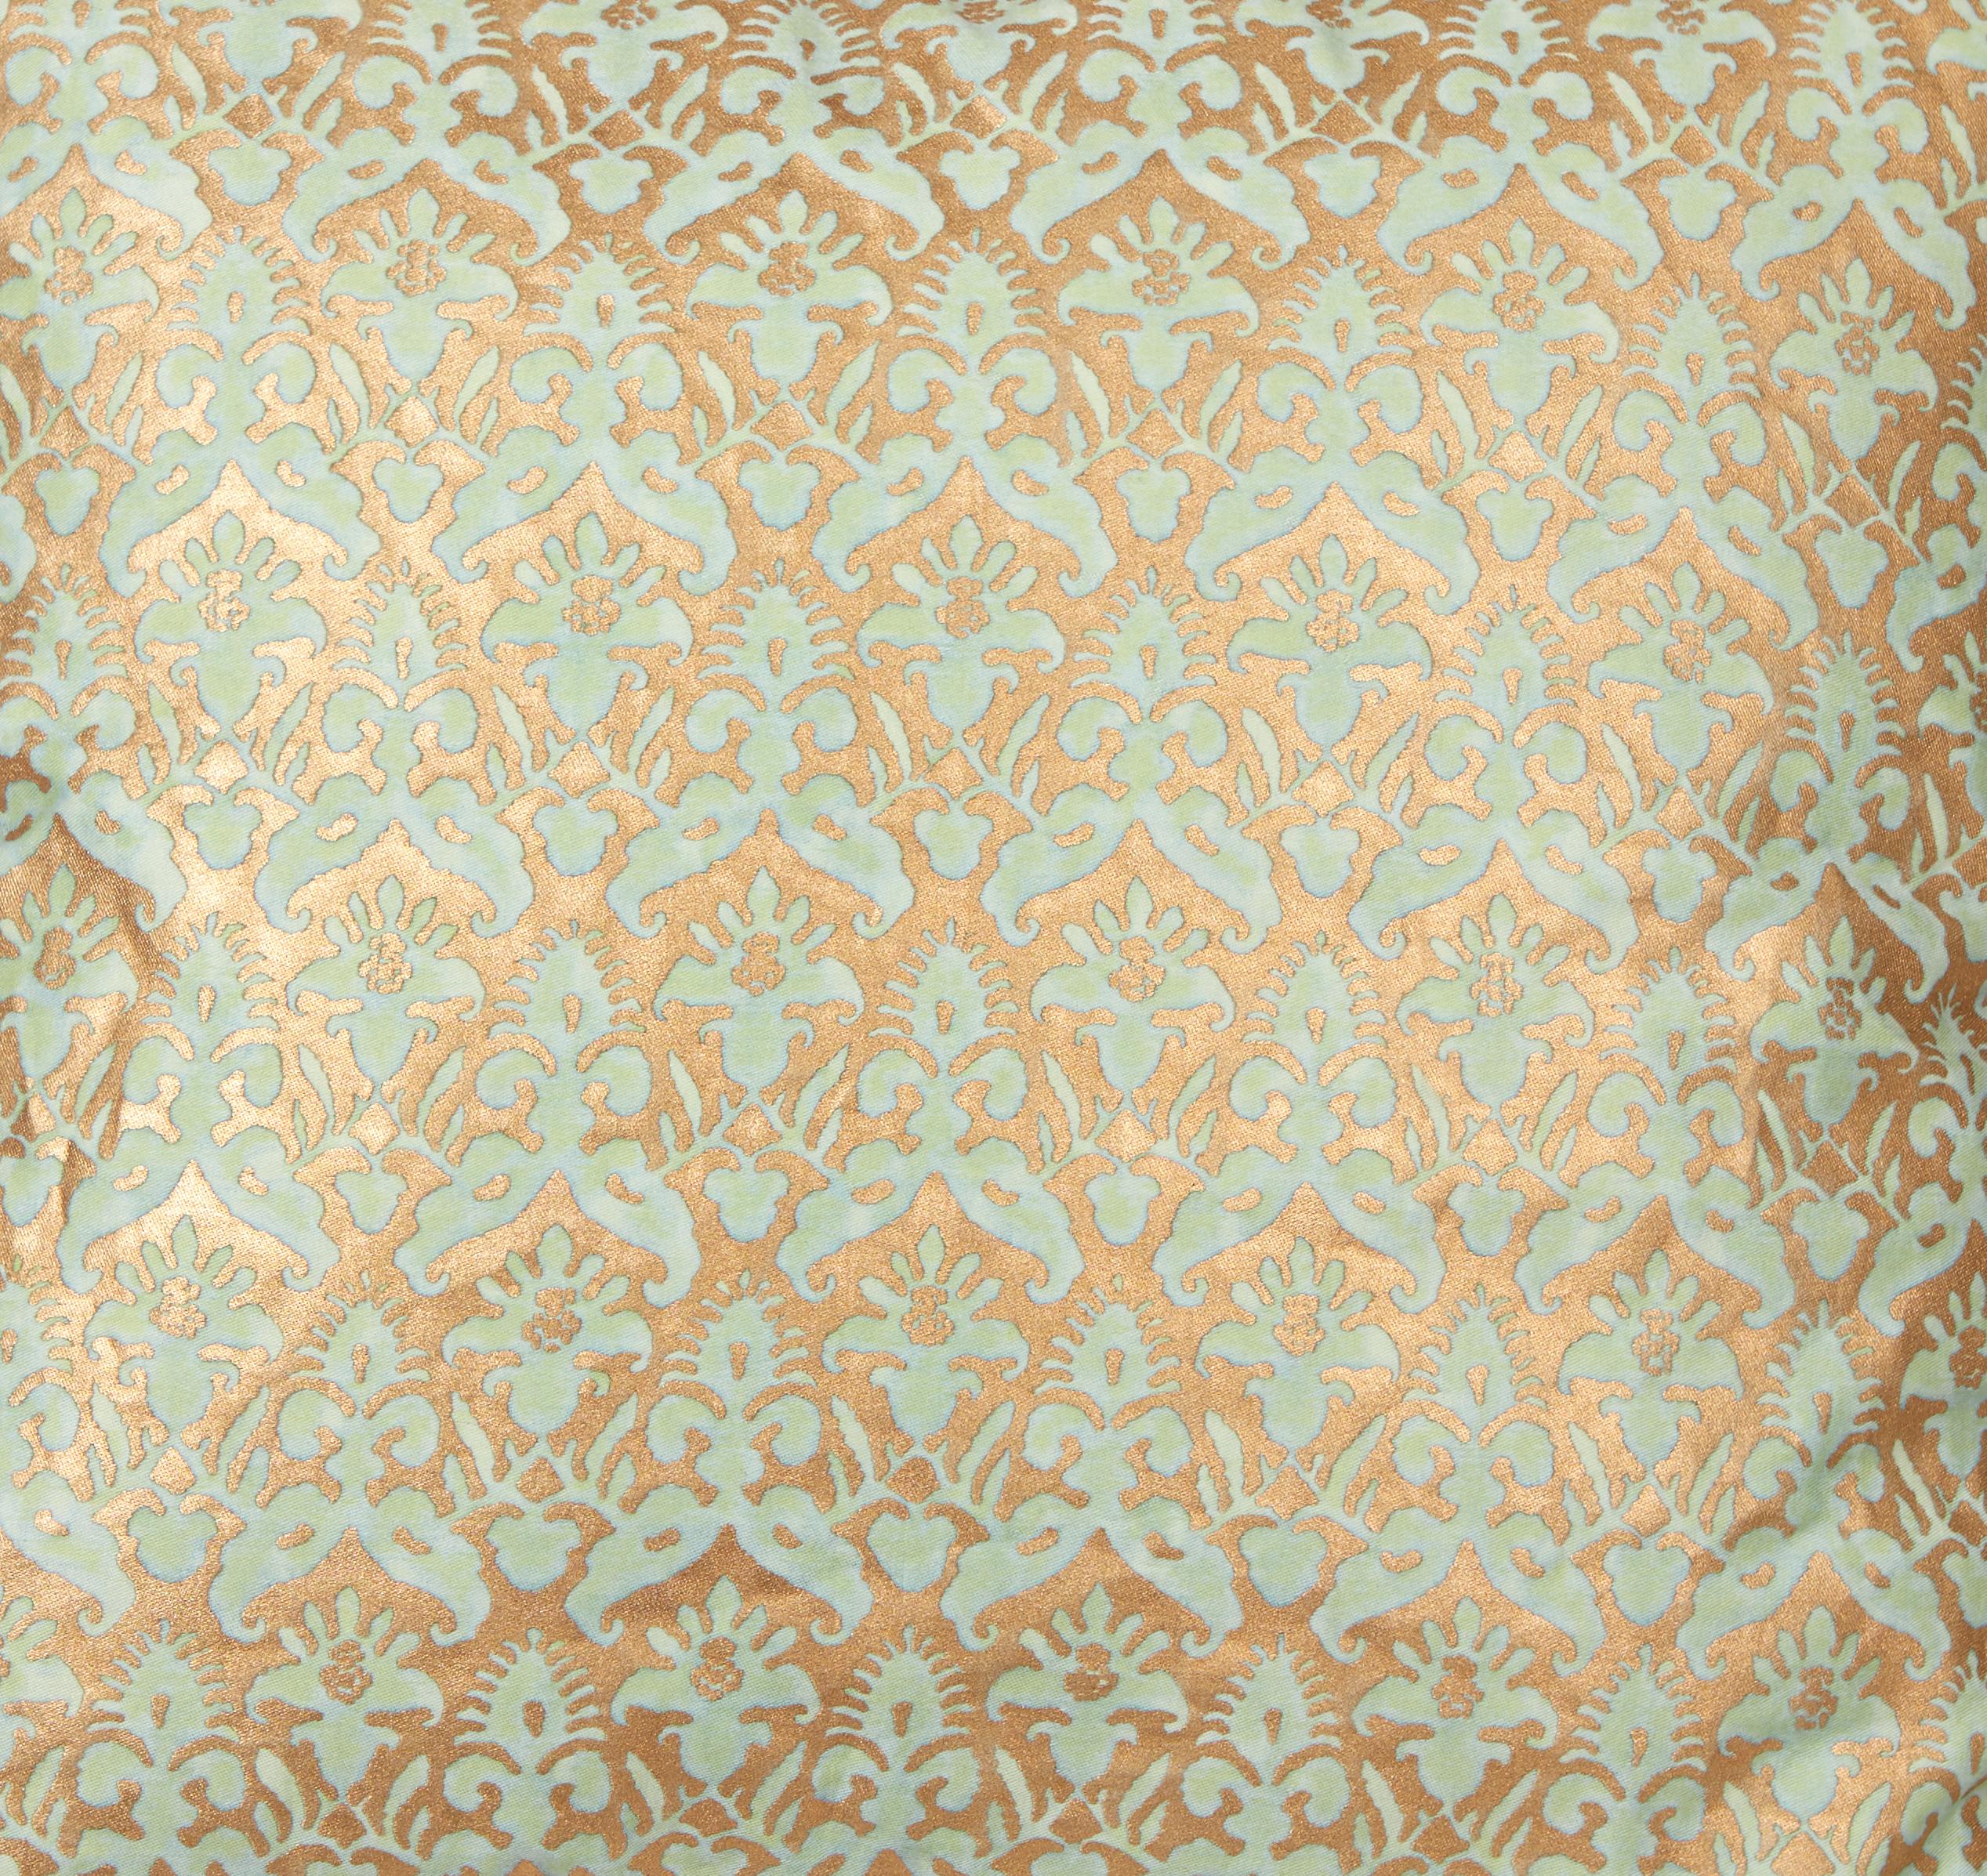 Ein Paar Fortuny-Stoffkissen mit Delfino-Muster, aquamarin und goldfarben, mit Schrägbandeinfassung aus Seide. Das Muster ist ein französisches Design aus dem 17. Jahrhundert im Stil von Louis XIII. Neu hergestellt aus altem Fortuny-Stoff. einlage